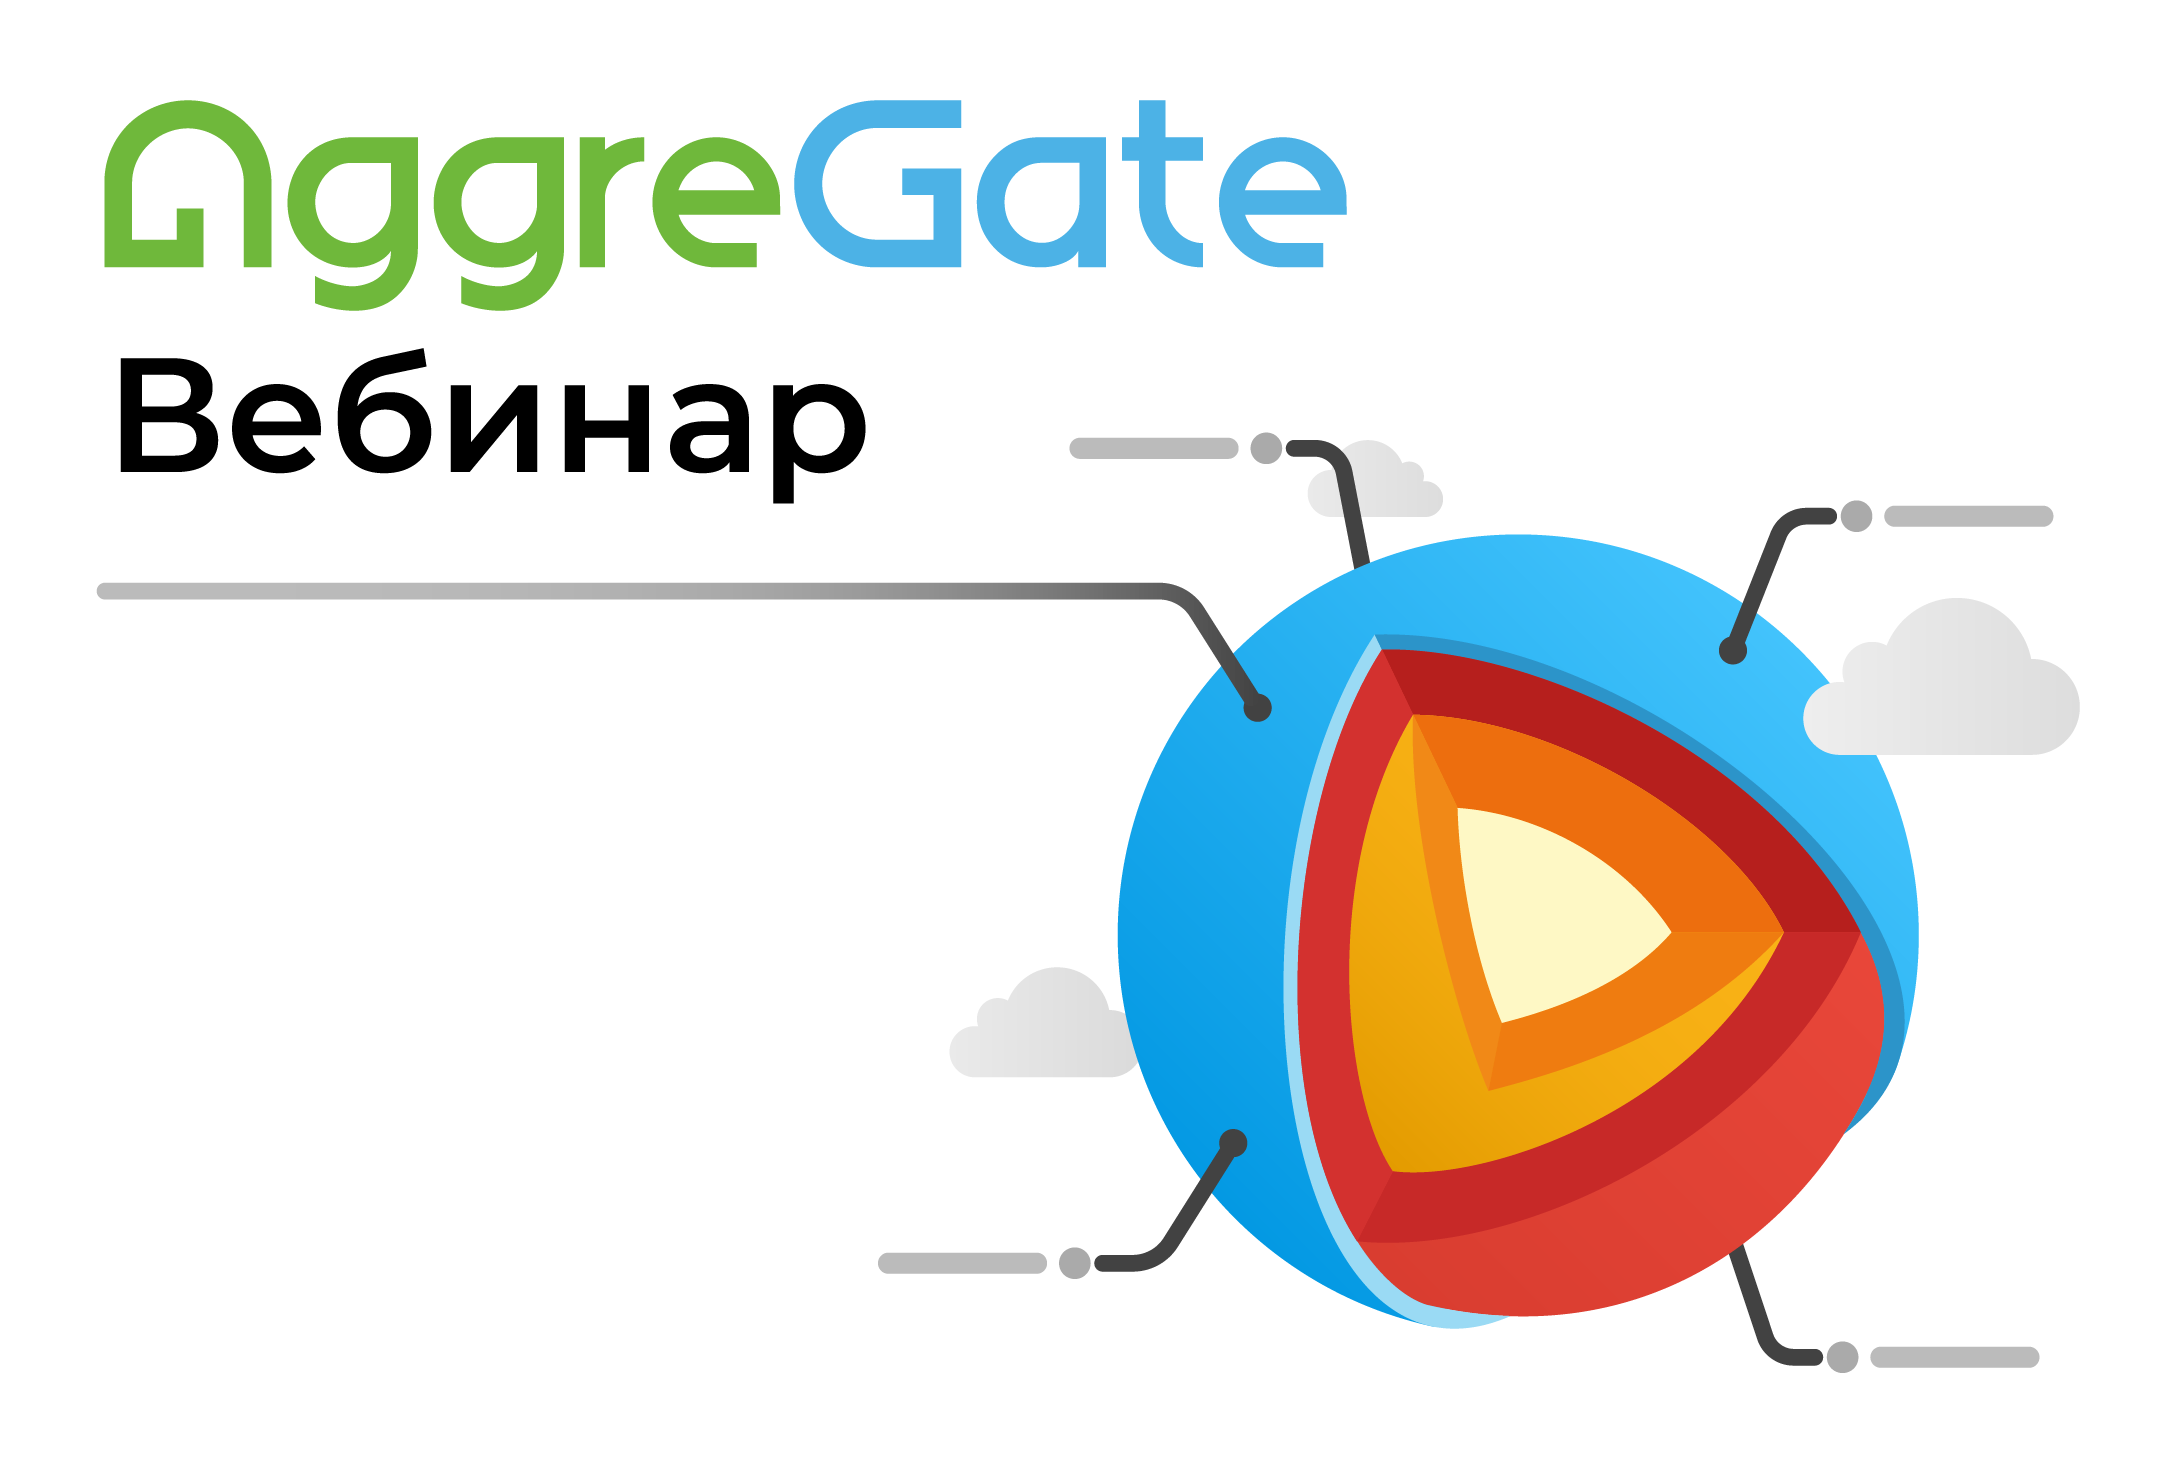 AggreGate-webinar-registration